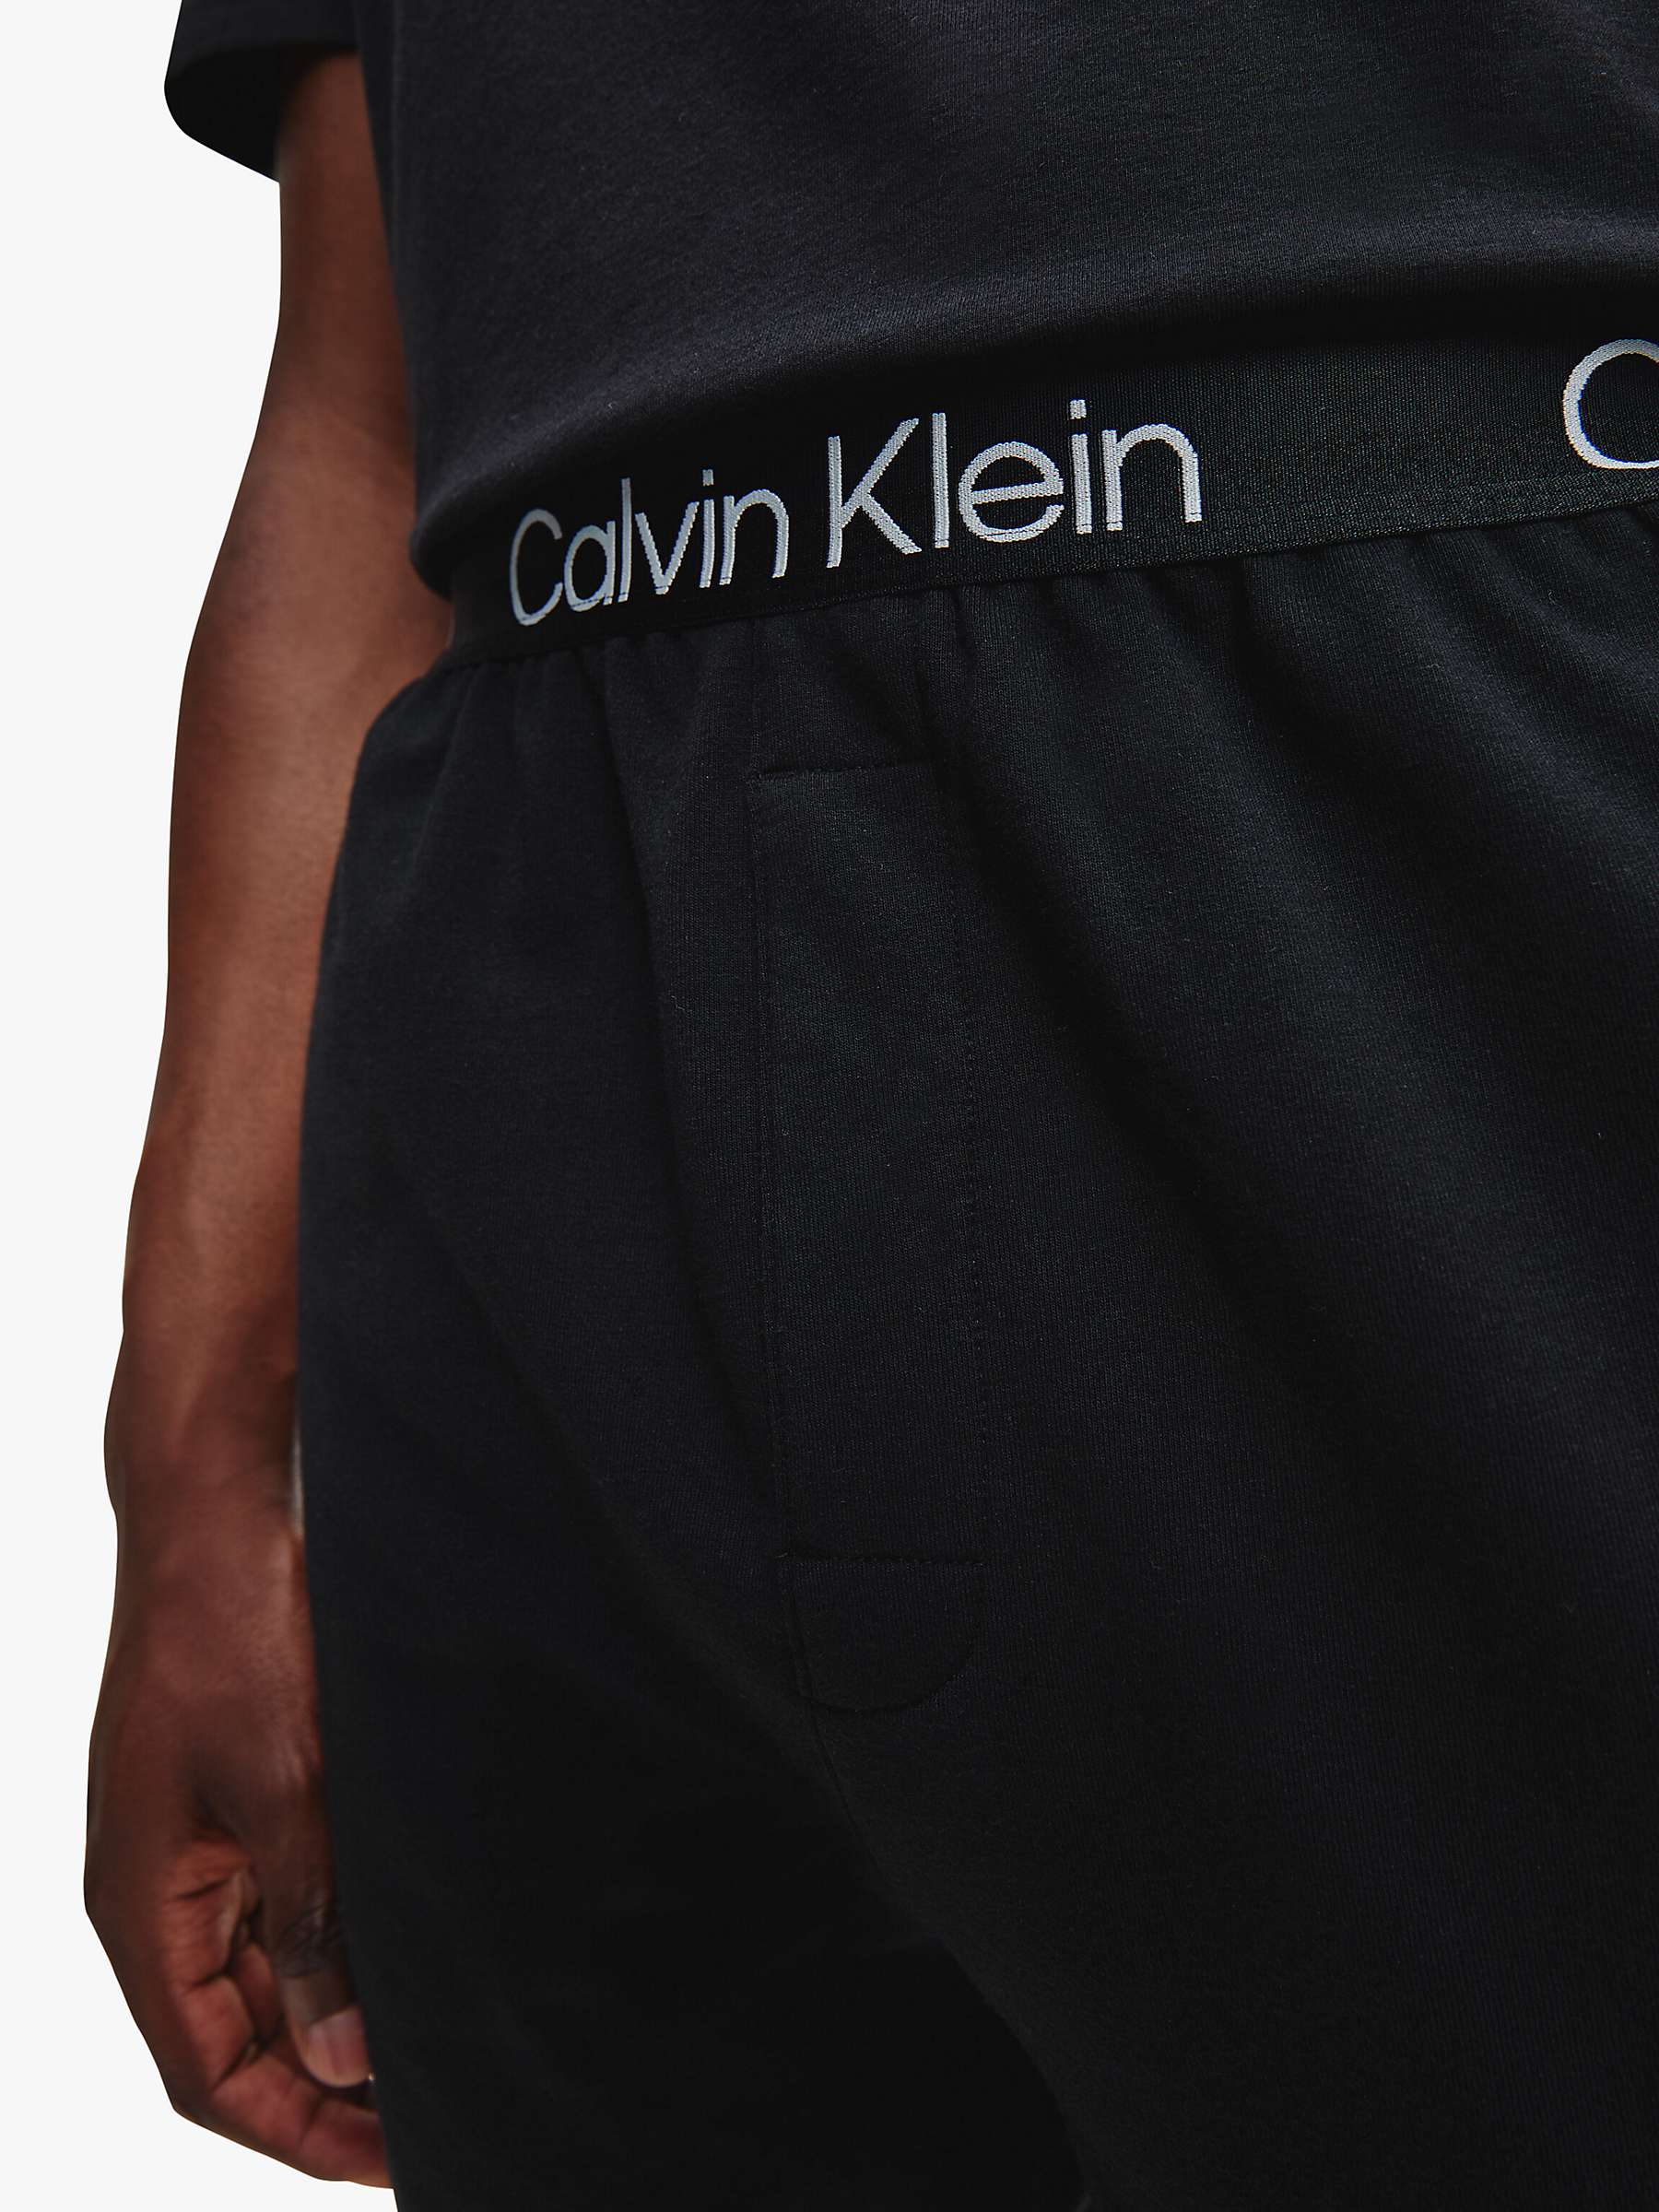 Buy Calvin Klein Sleep Lounge Shorts, Black Online at johnlewis.com